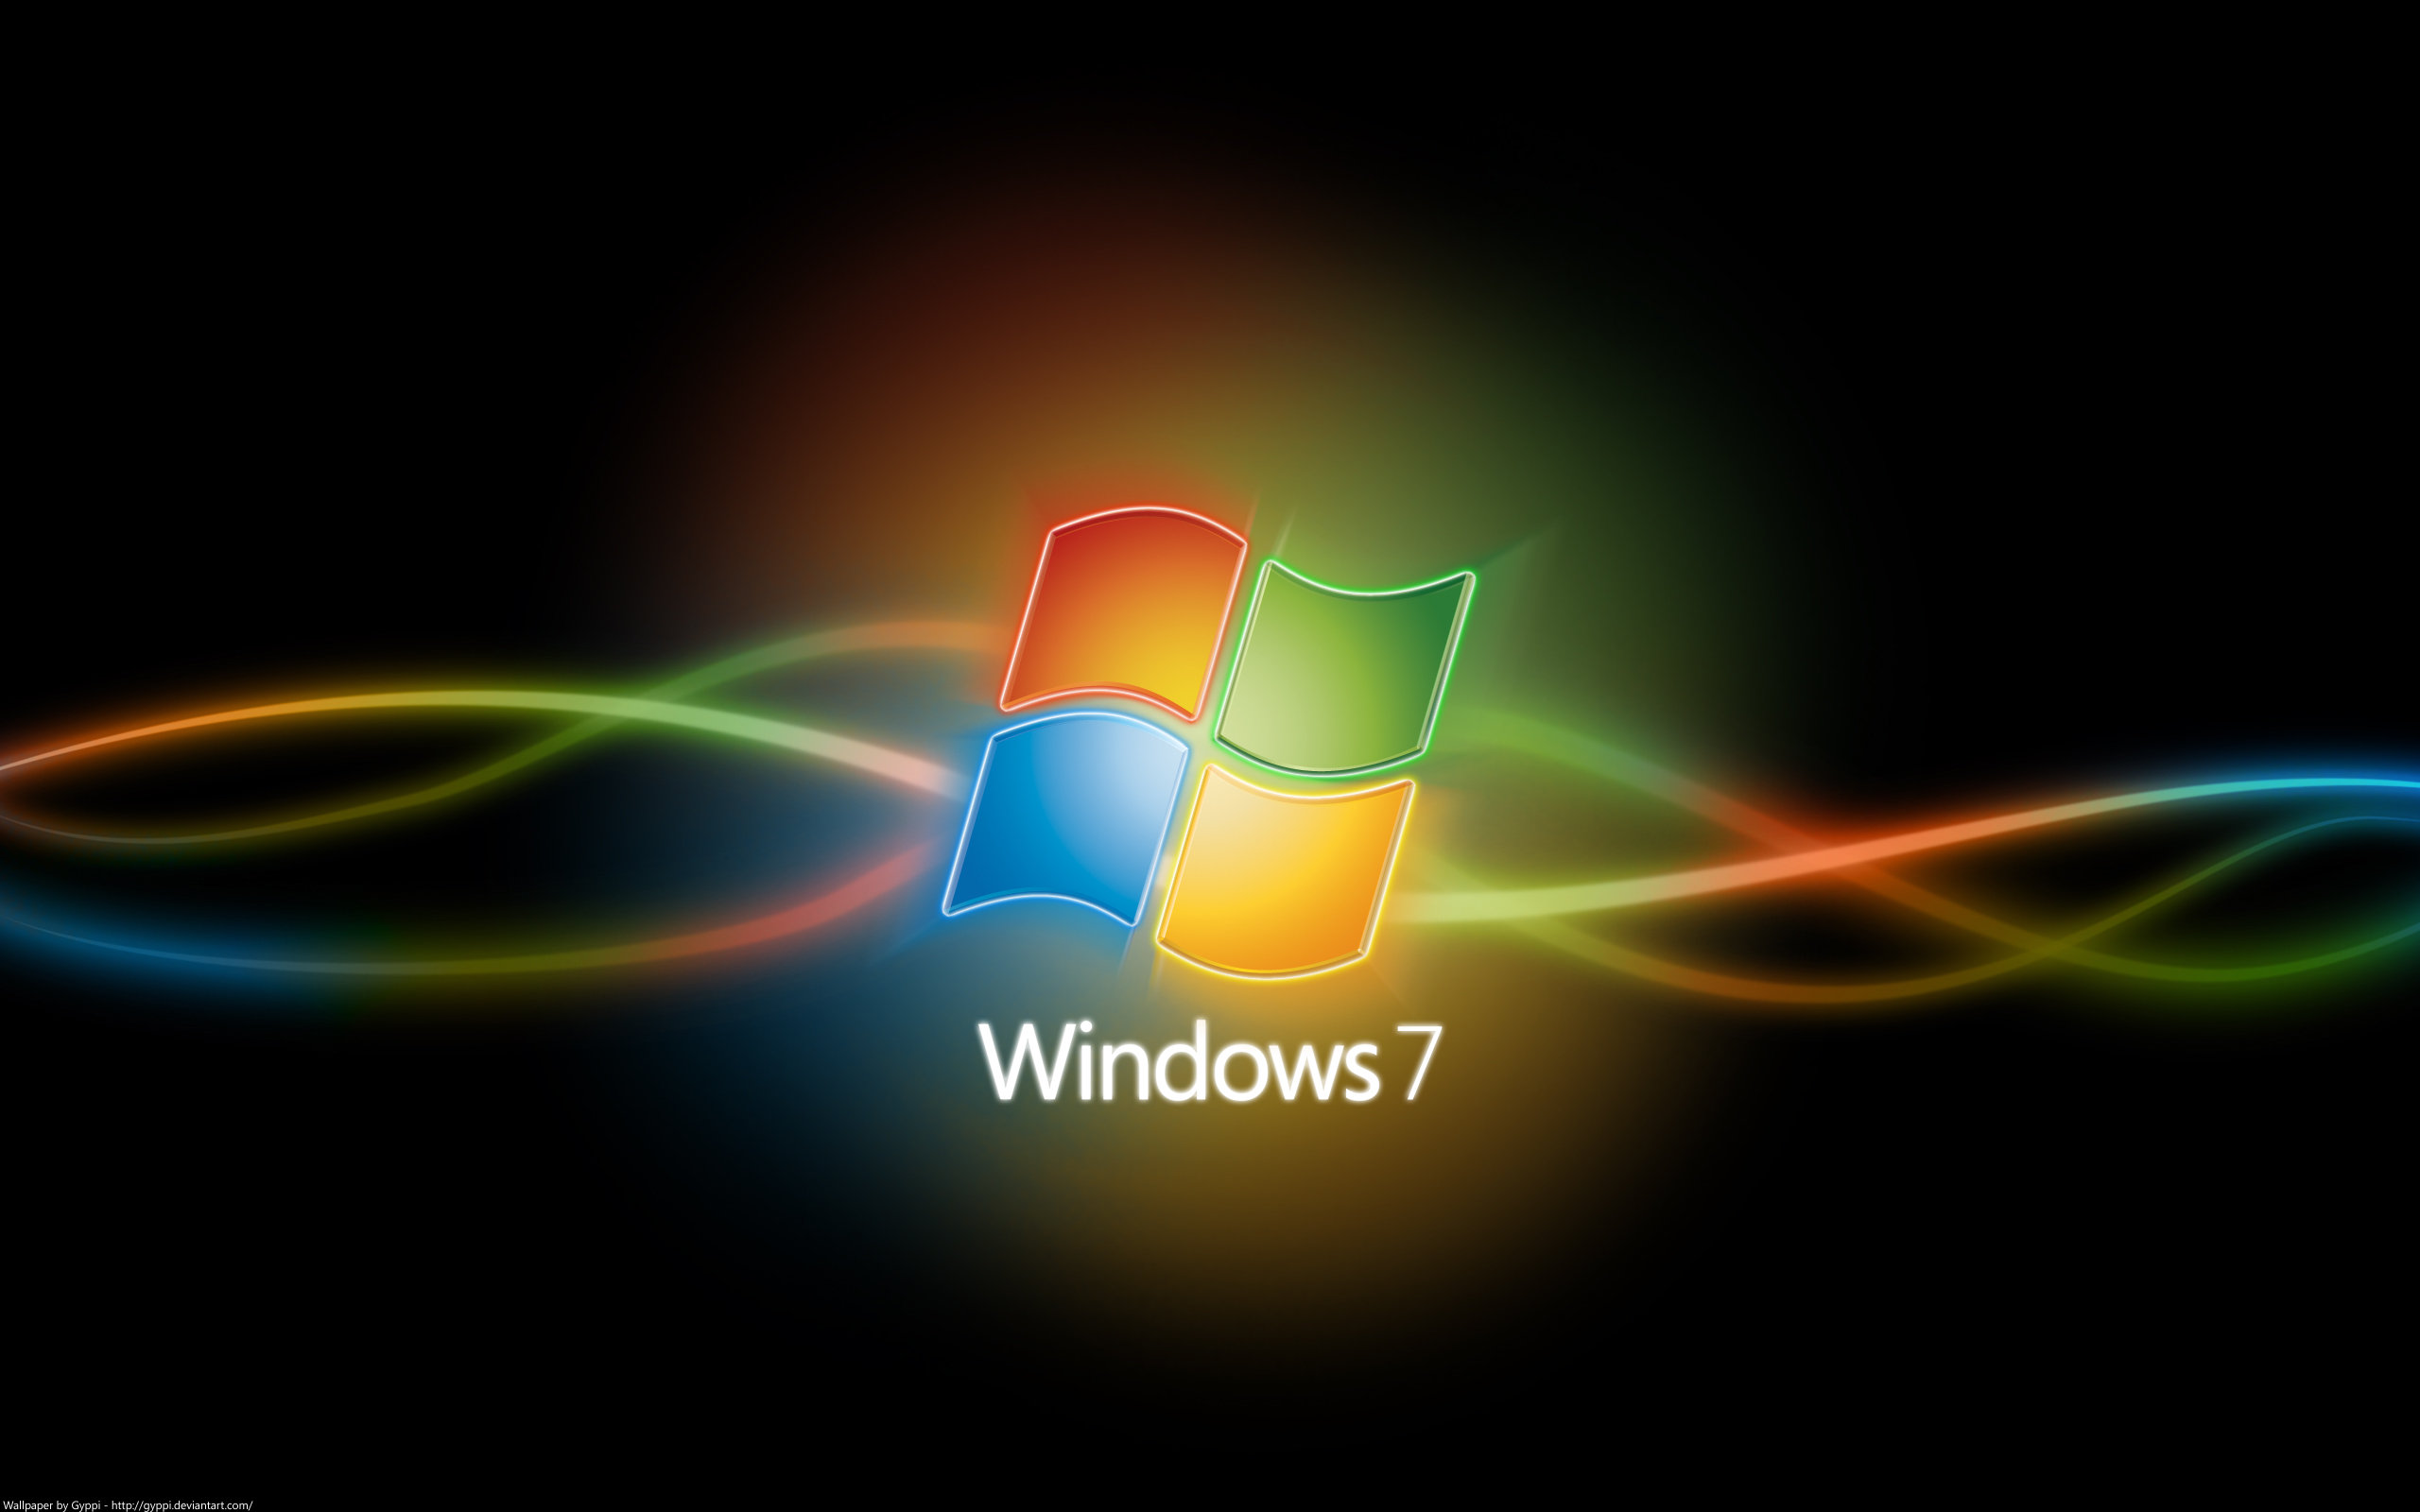 de wallpapers HD con el logo de Windows Zona Windows   Wallpapers